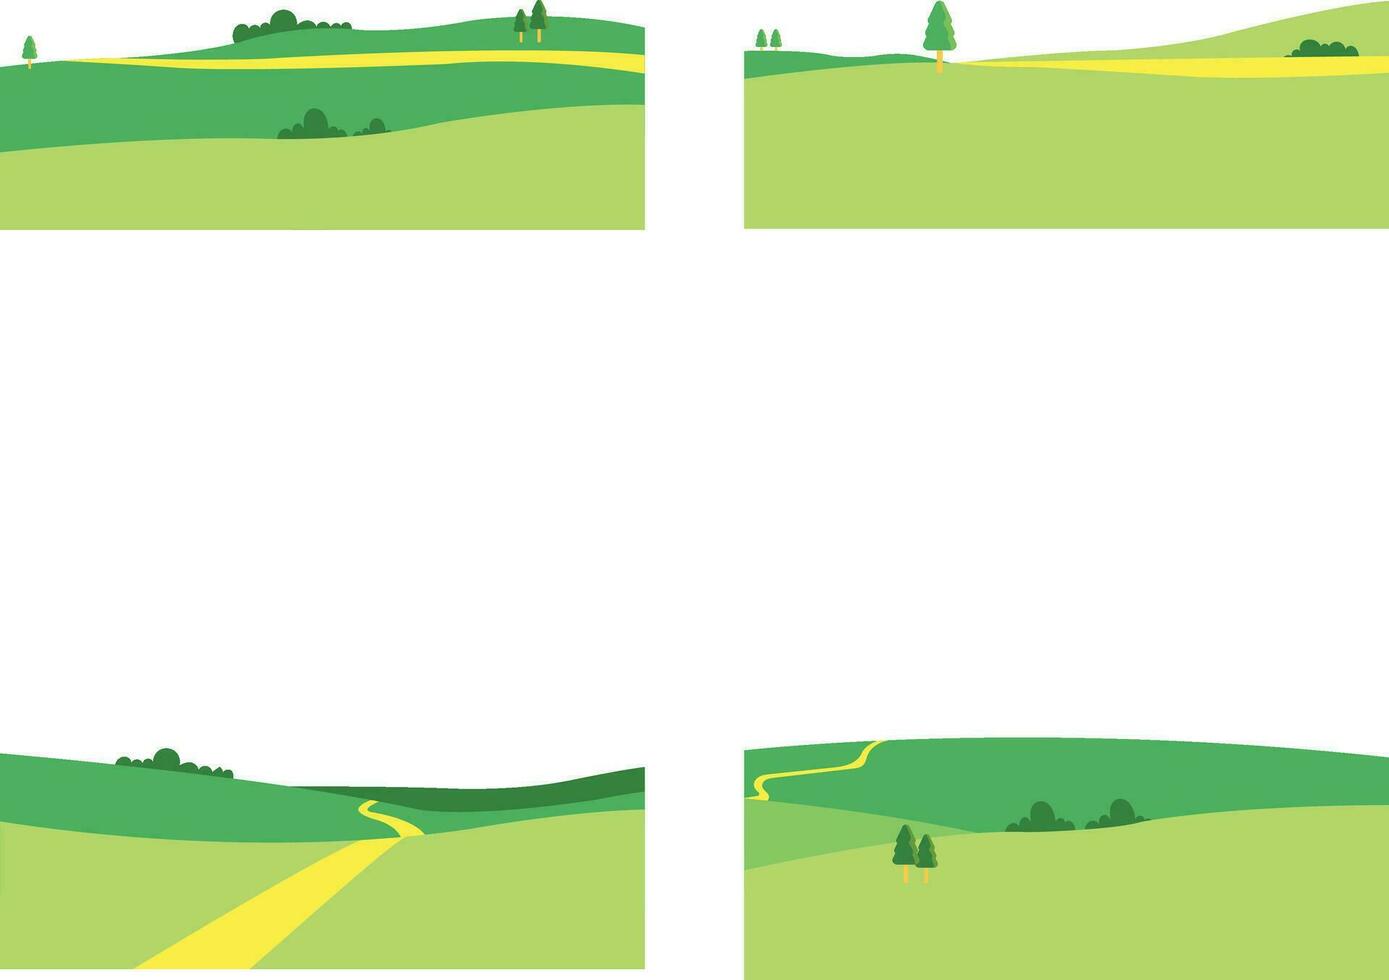 verzameling van veld- groen heuvels. met esthetisch ontwerp. geïsoleerd vector icoon.